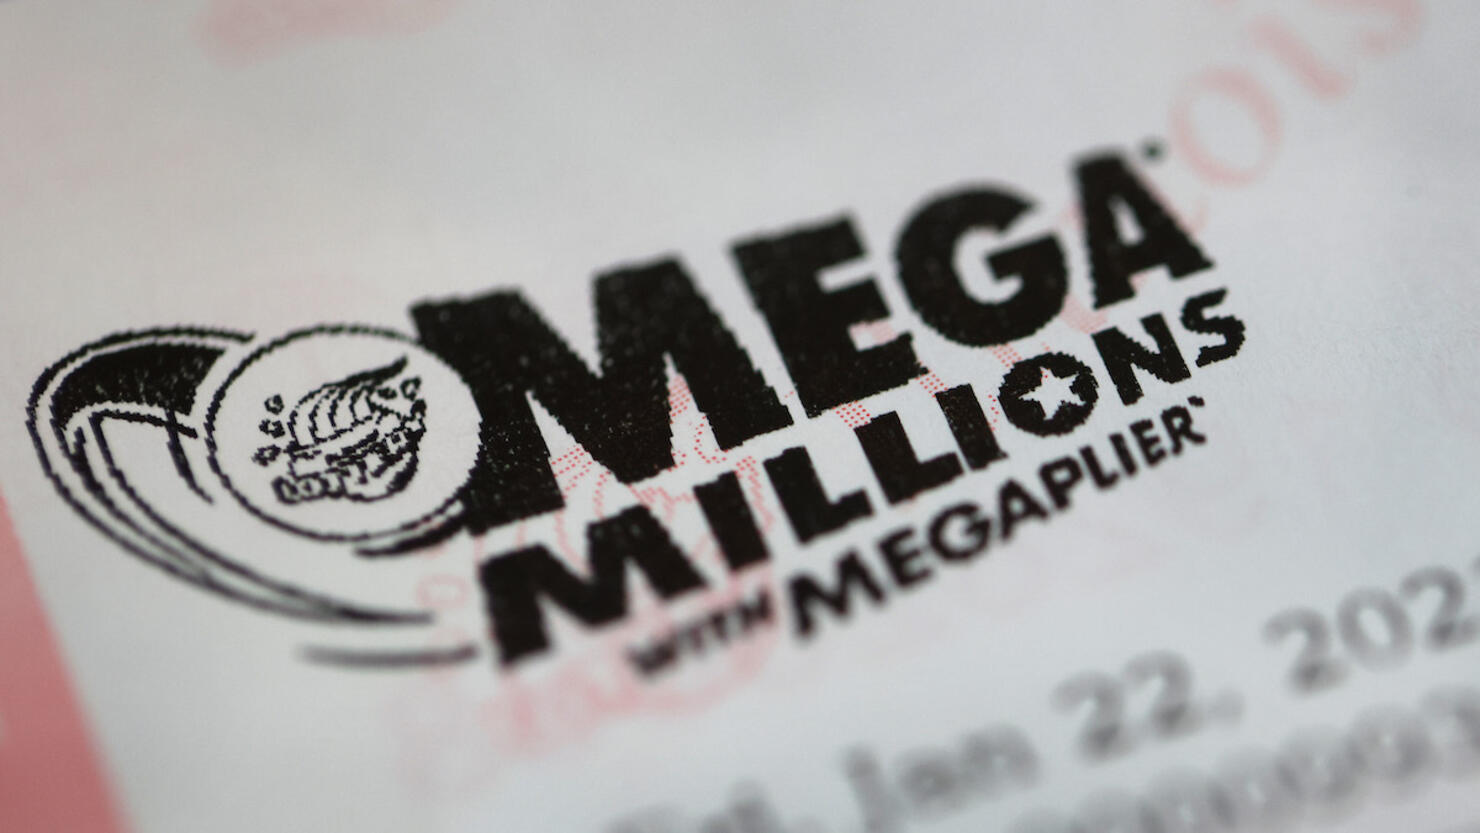 Mega Millions Jackpot Nearly 1 Billion Dollars